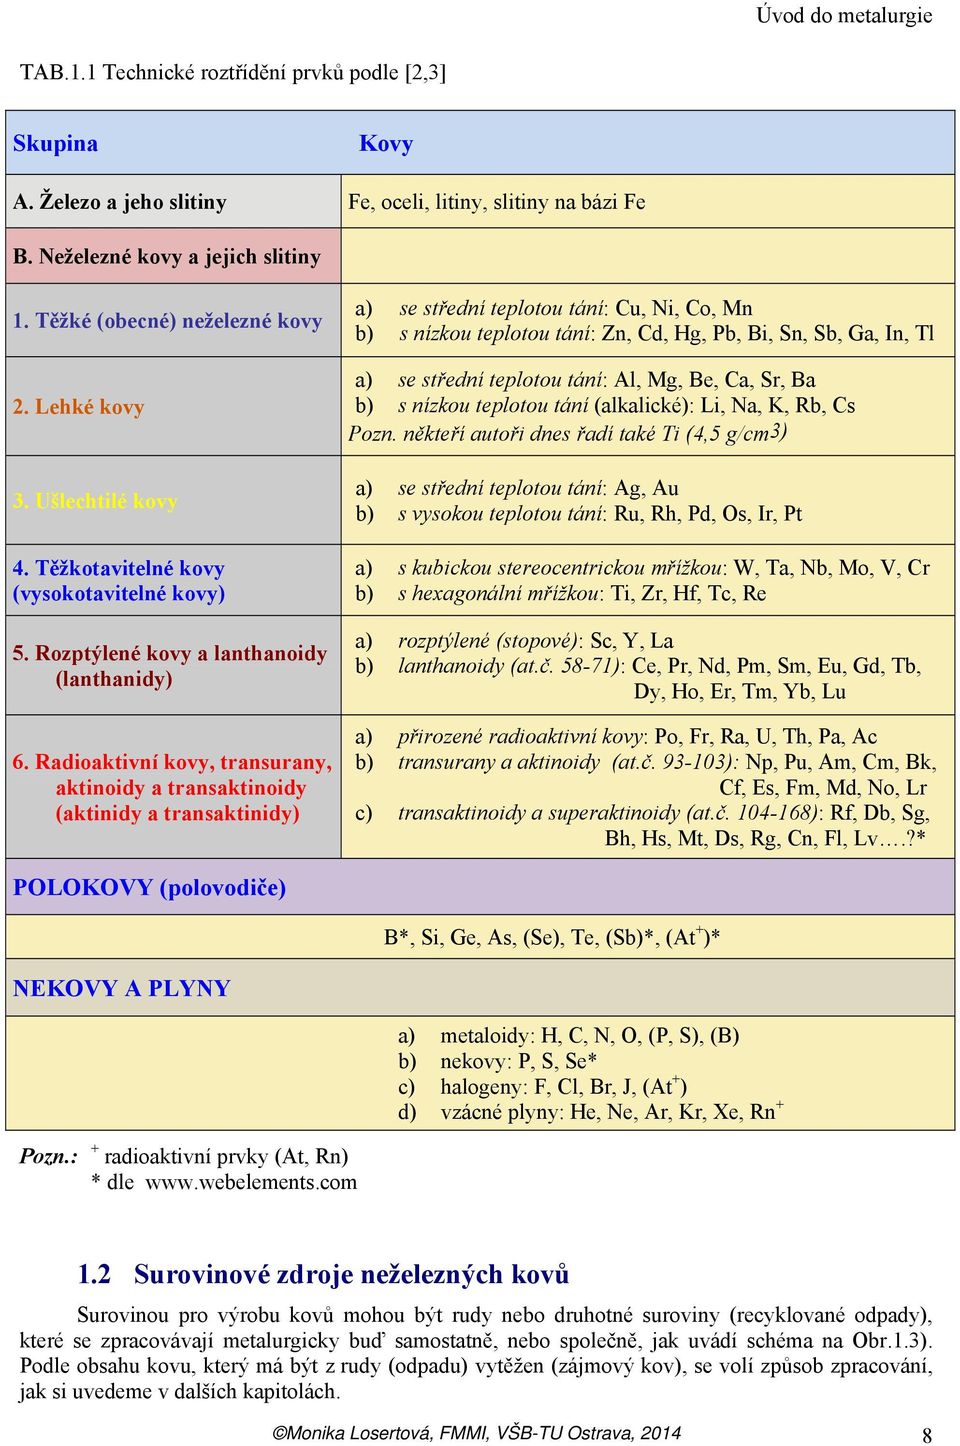 Radioaktivní kovy, transurany, aktinoidy a transaktinoidy (aktinidy a transaktinidy) a) se střední teplotou tání: Cu, Ni, Co, Mn b) s nízkou teplotou tání: Zn, Cd, Hg, Pb, Bi, Sn, Sb, Ga, In, Tl a)